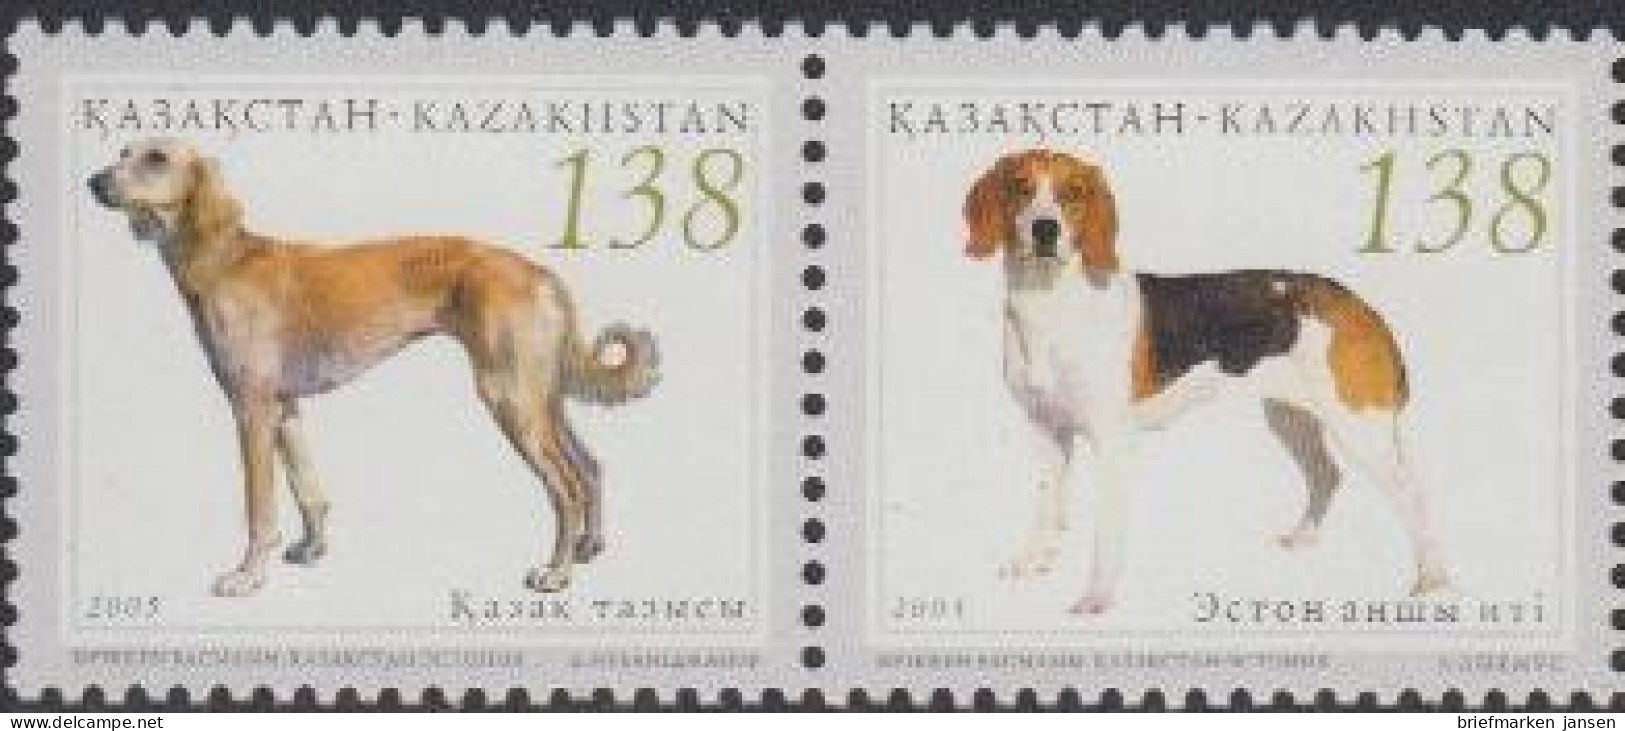 Kasachstan Mi.Nr. Zdr.515-16 Jagdhunde, Kasachischer Windhund, Estn. Laufhund  - Kazajstán